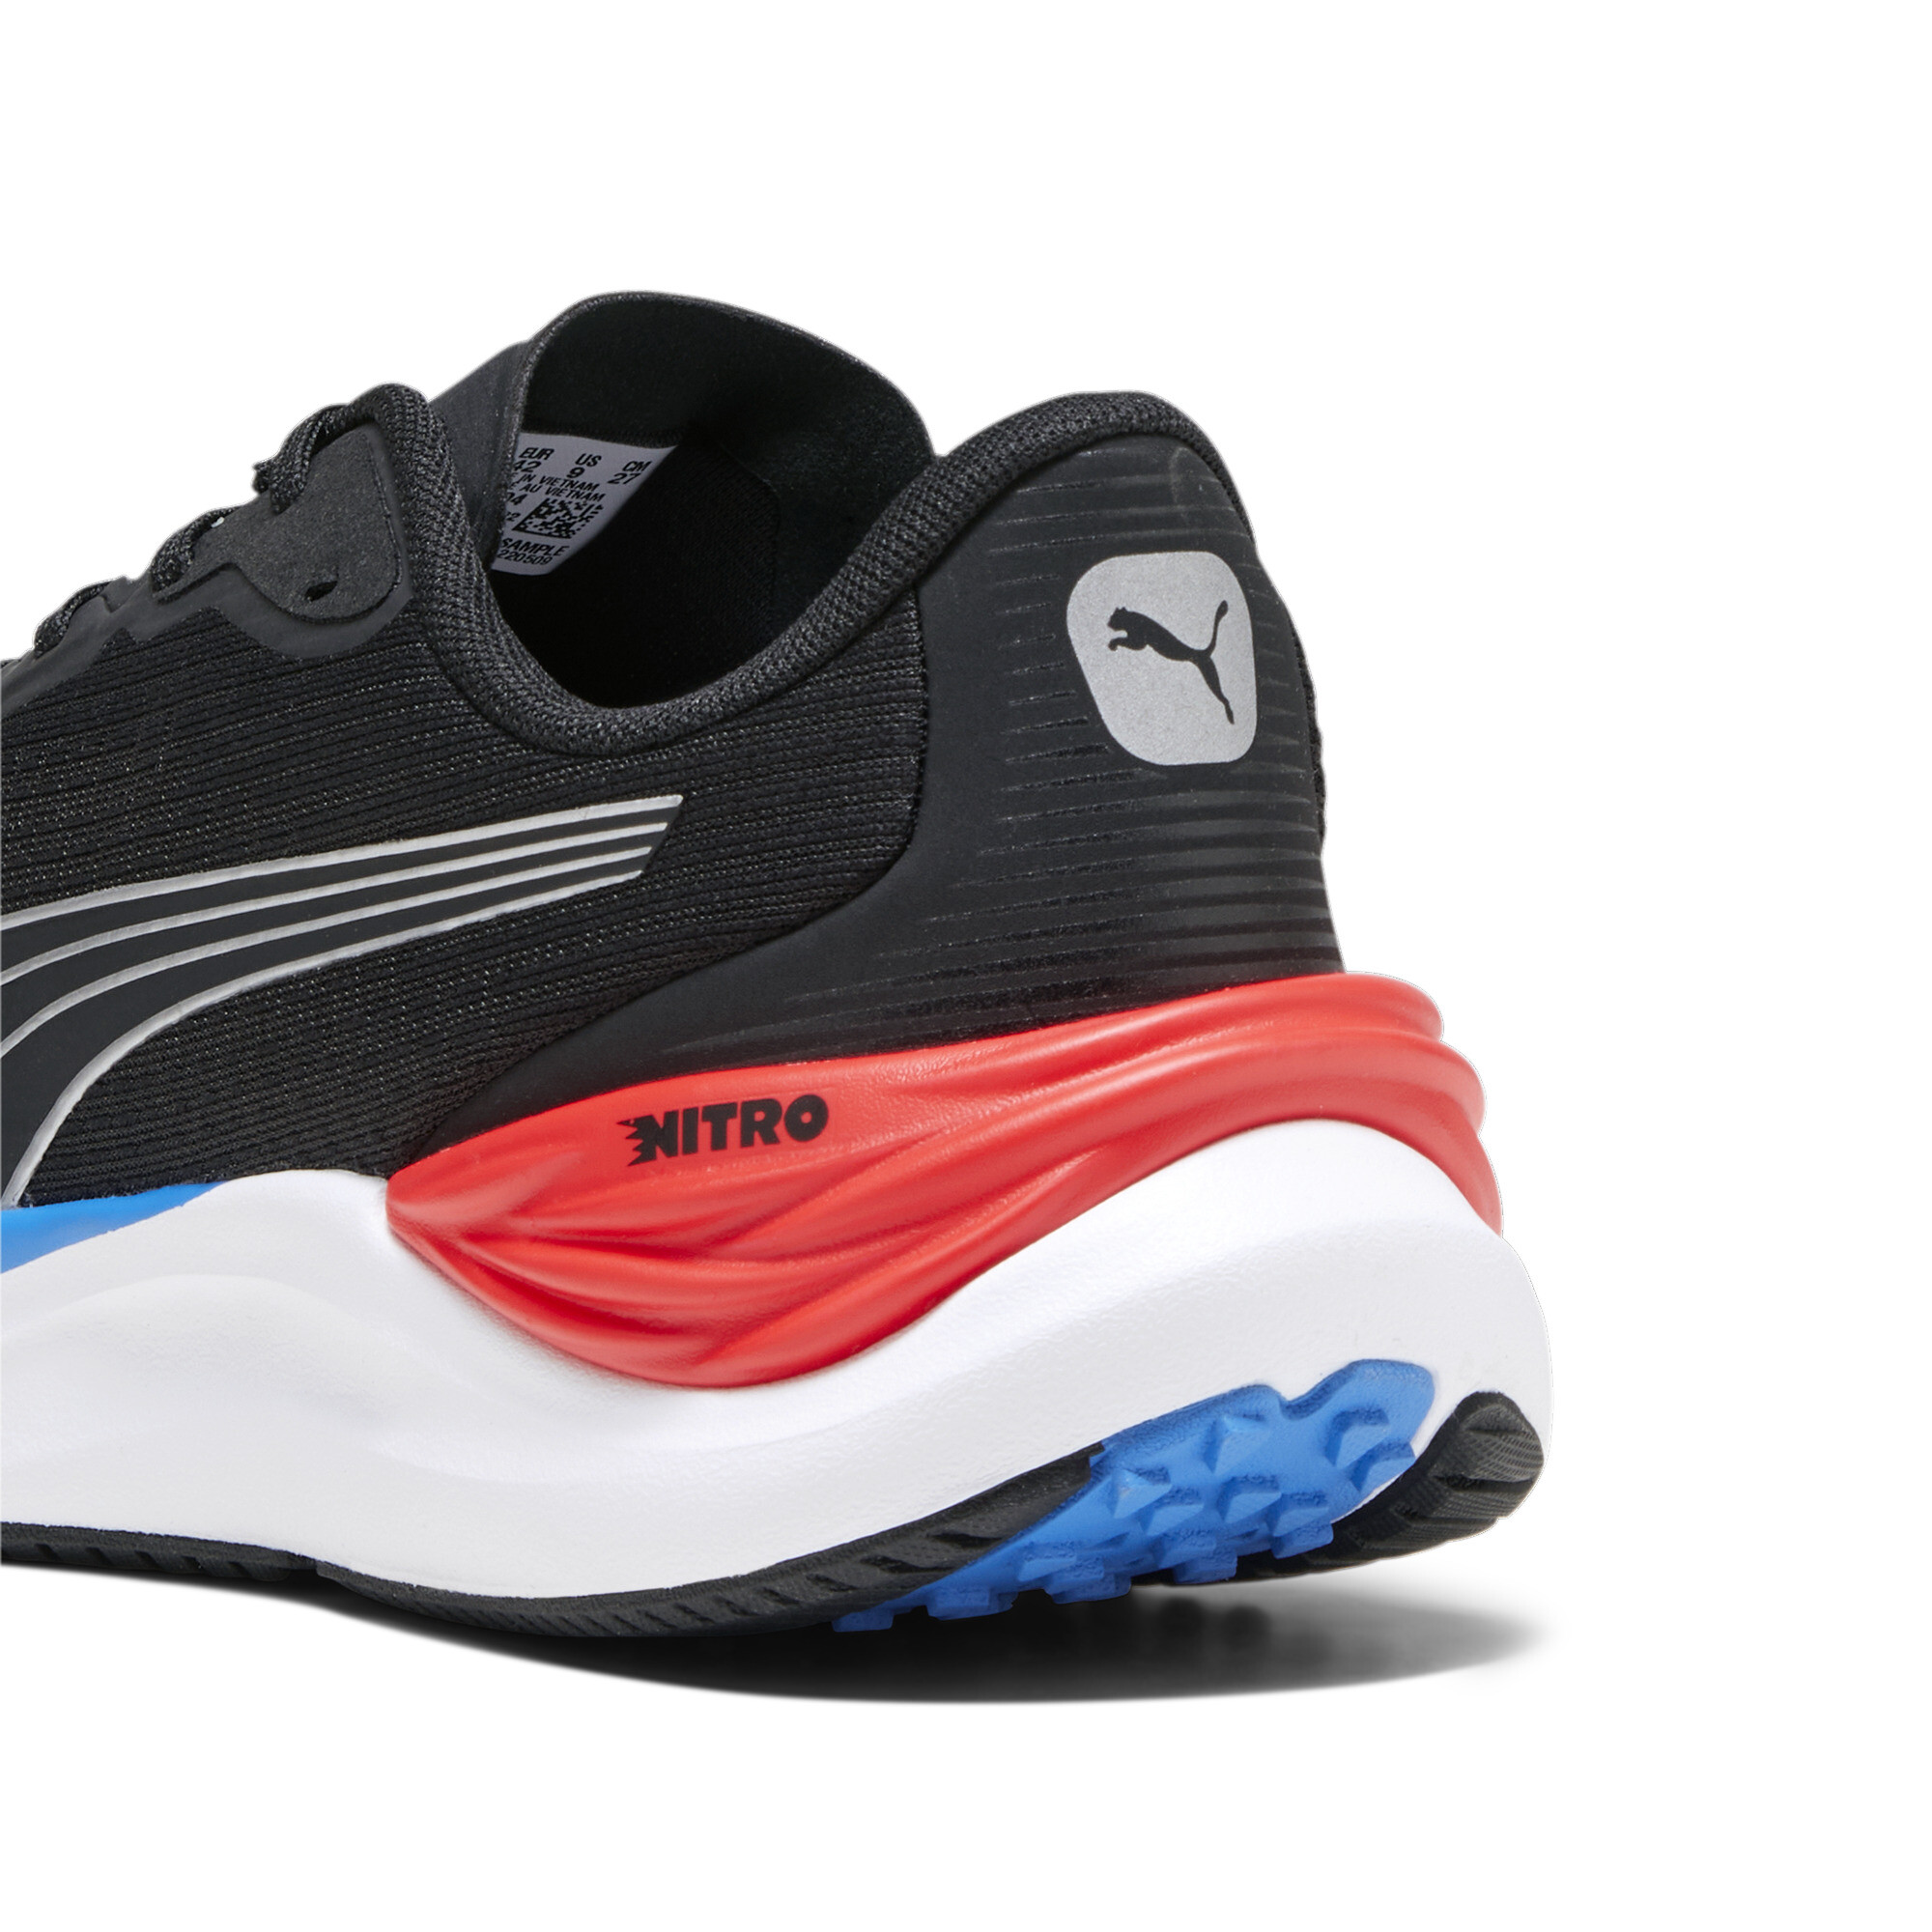 Men's PUMA Electrify NITROâ¢ 3 Running Shoes In Black, Size EU 46